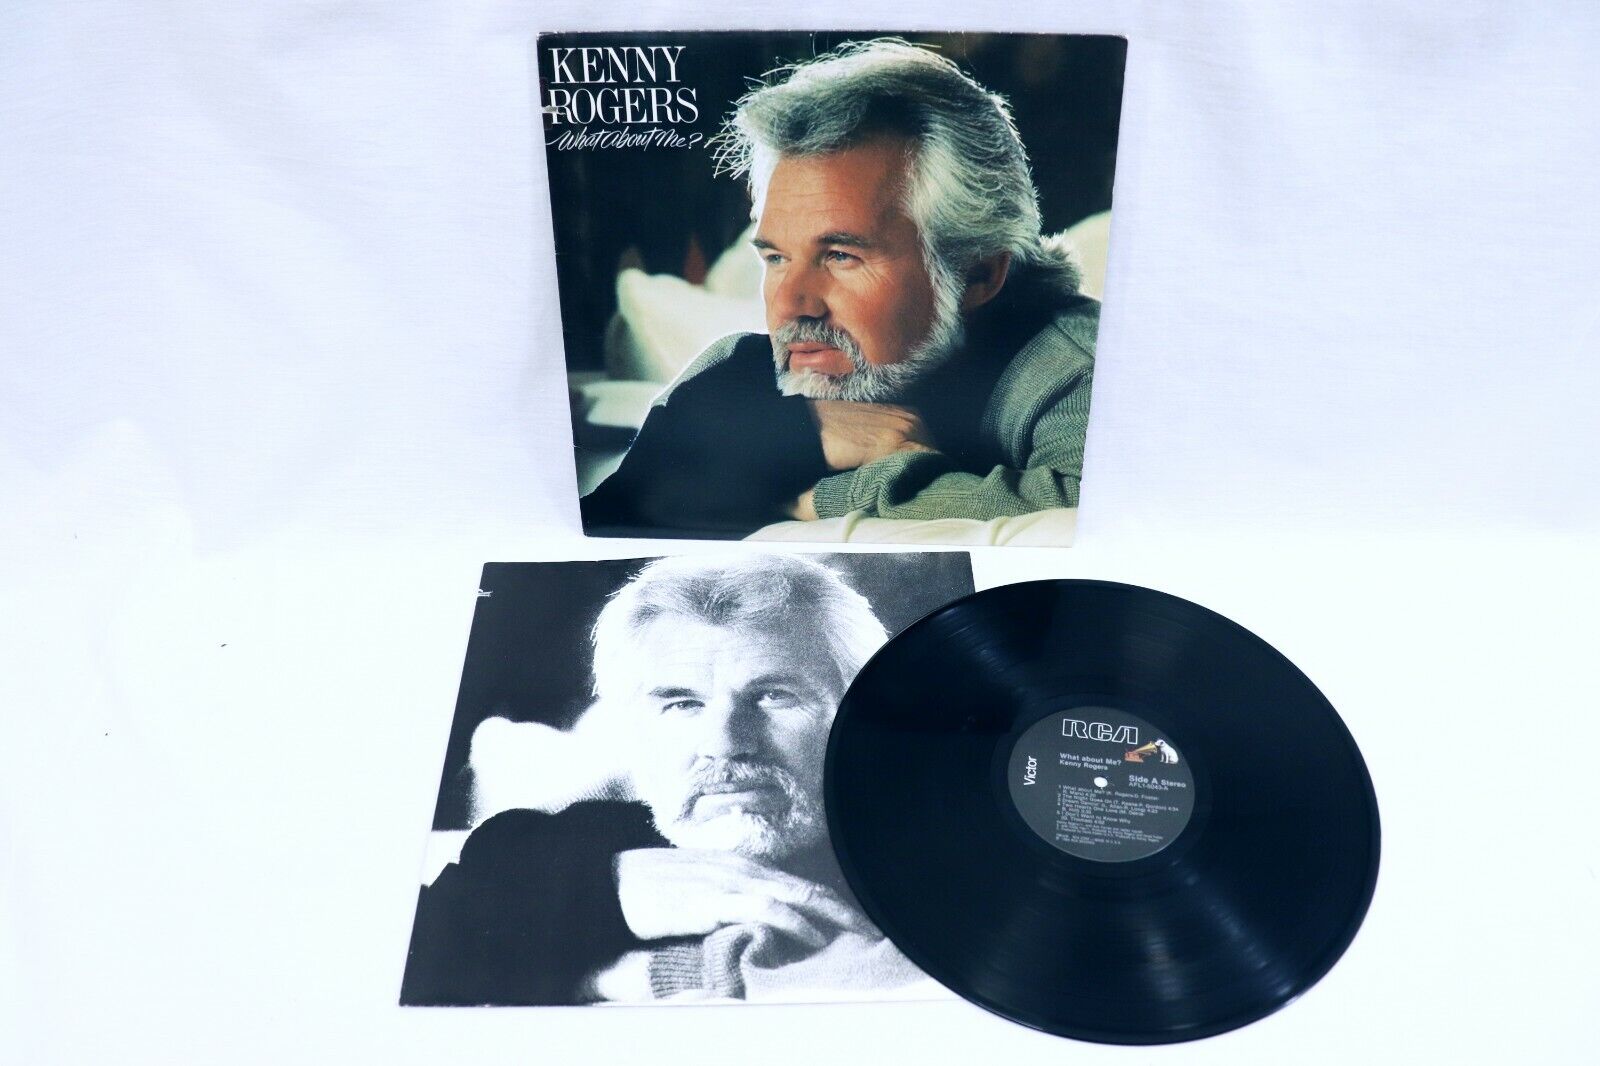 VINTAGE 1984 Kenny Rogers What About Me? LP Vinyl Record Album AFL15043